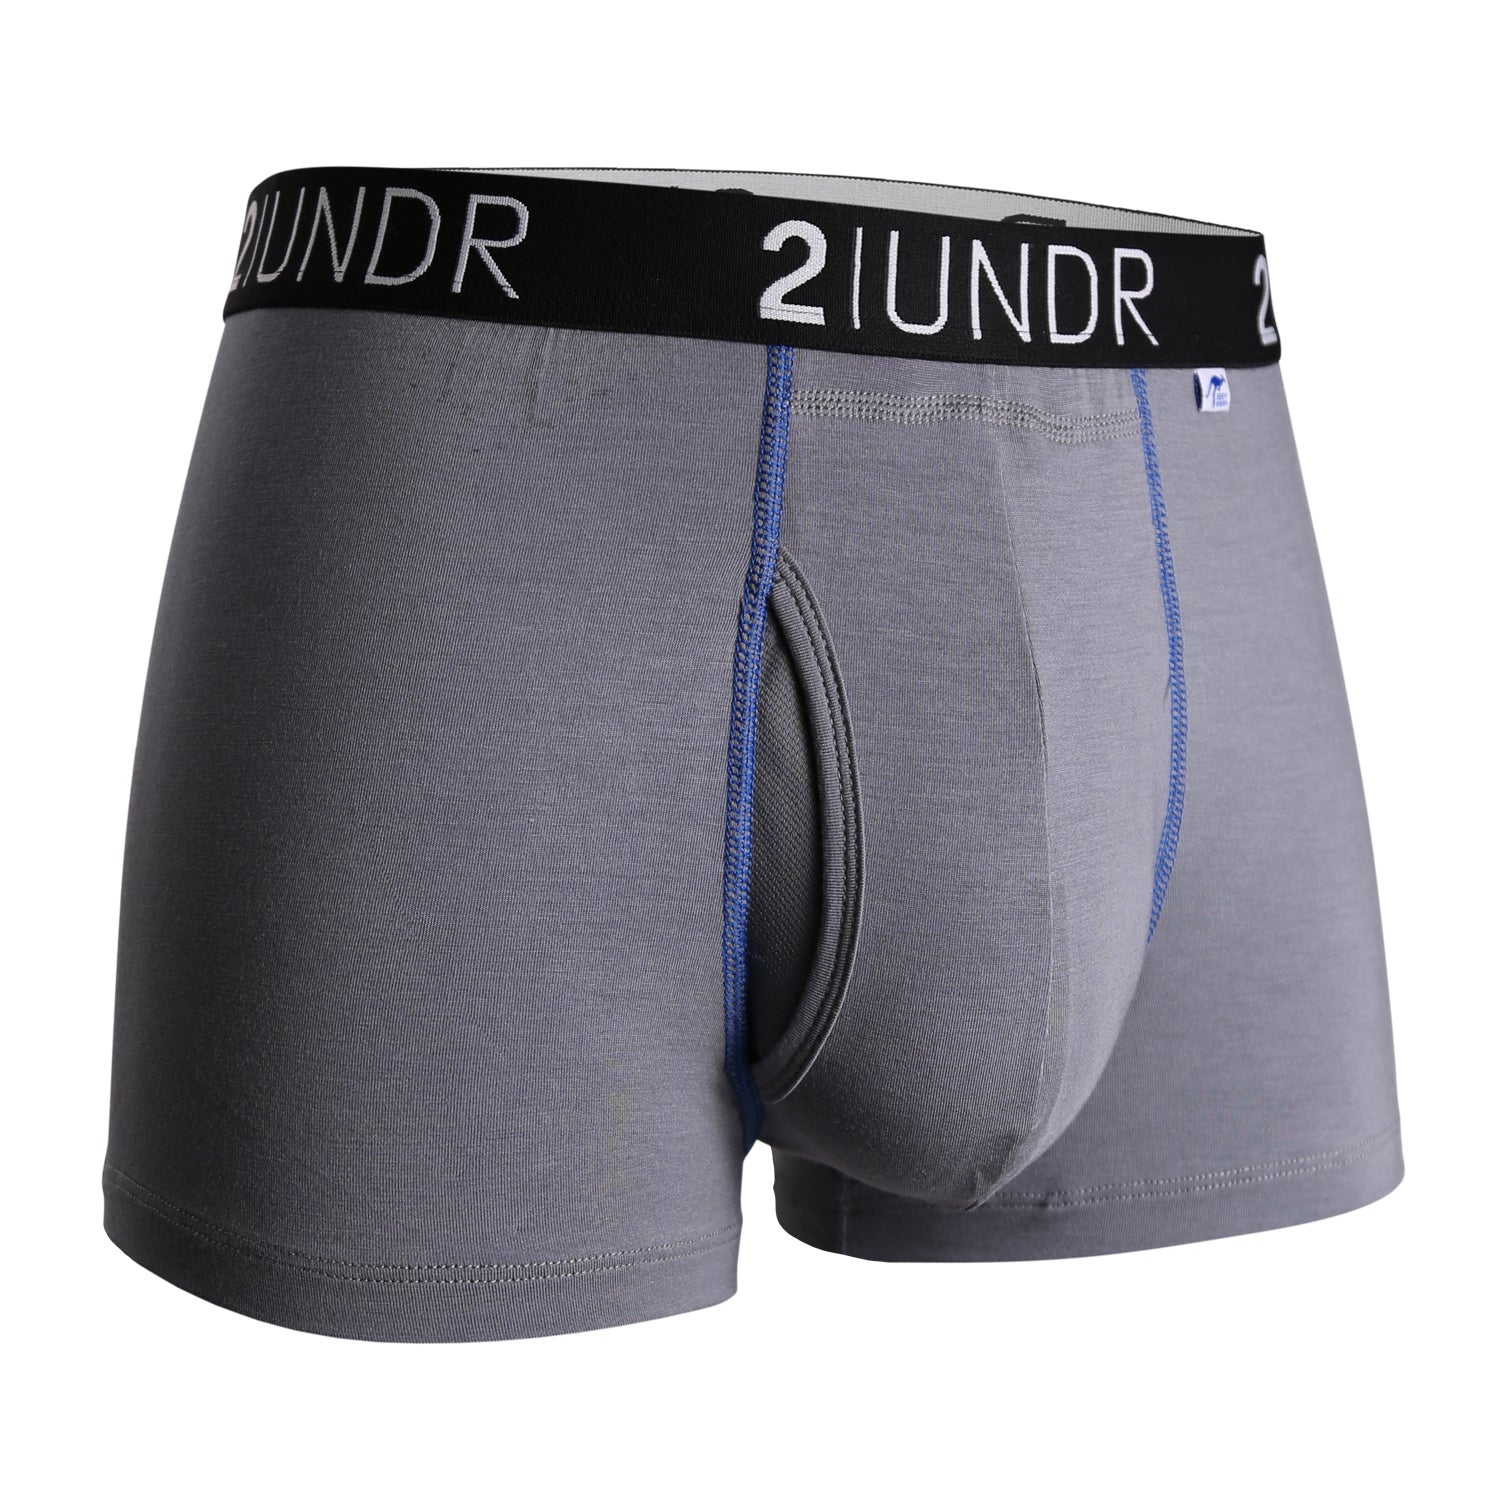 2undr Trunk Underwear